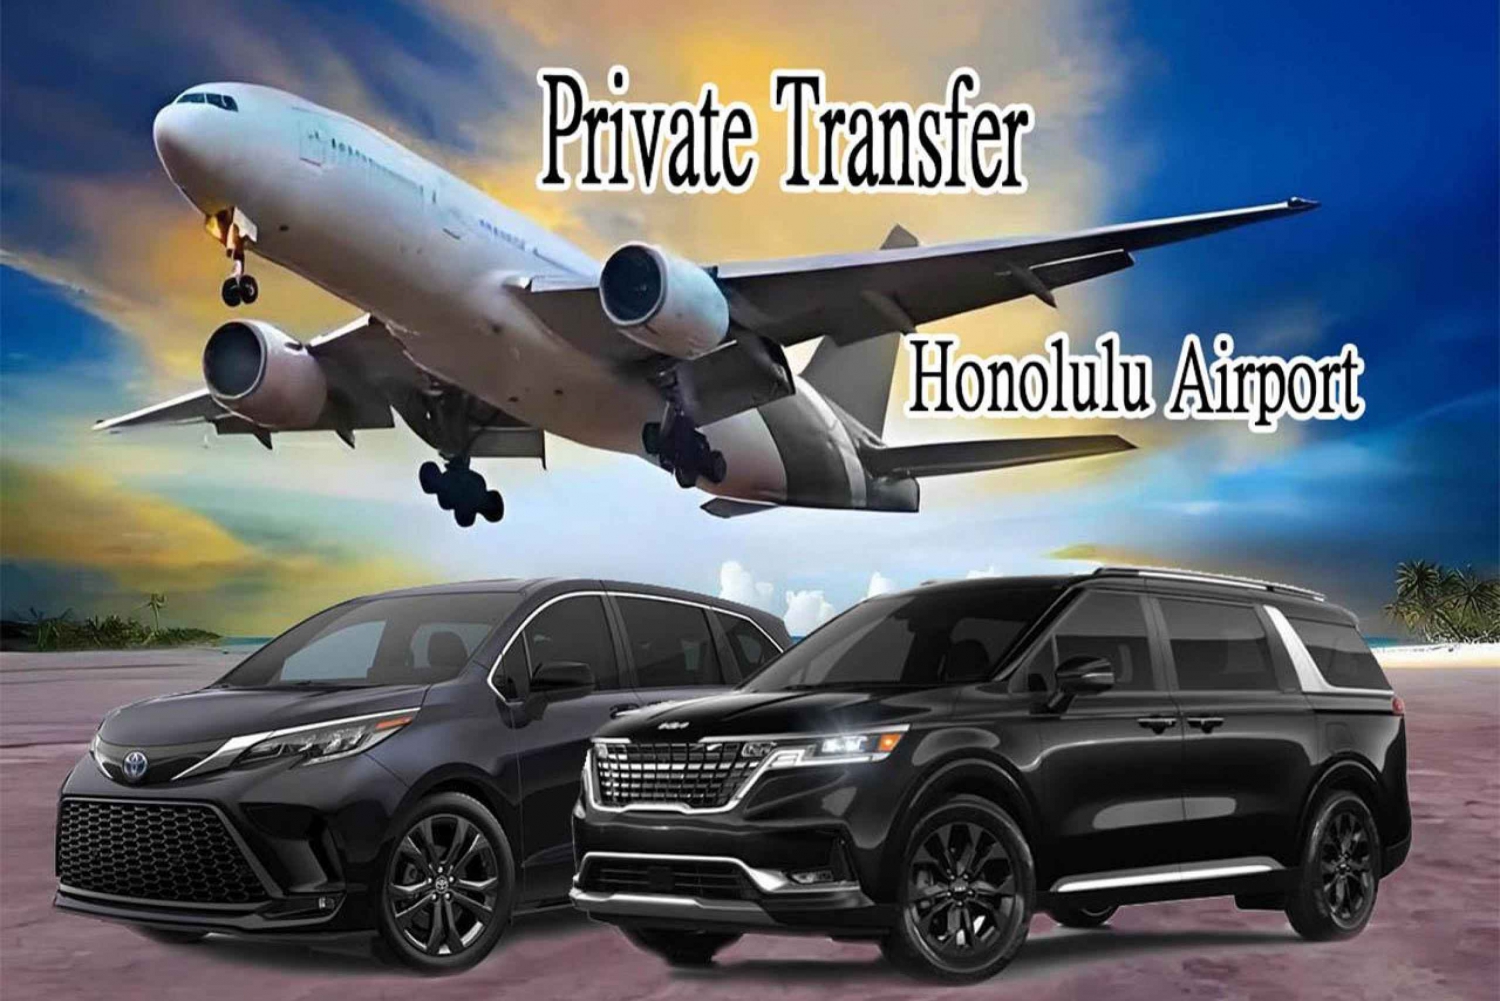 【ARRIVAL】Honolulun lentoasema - Yksityinen kuljetus Waikikiin